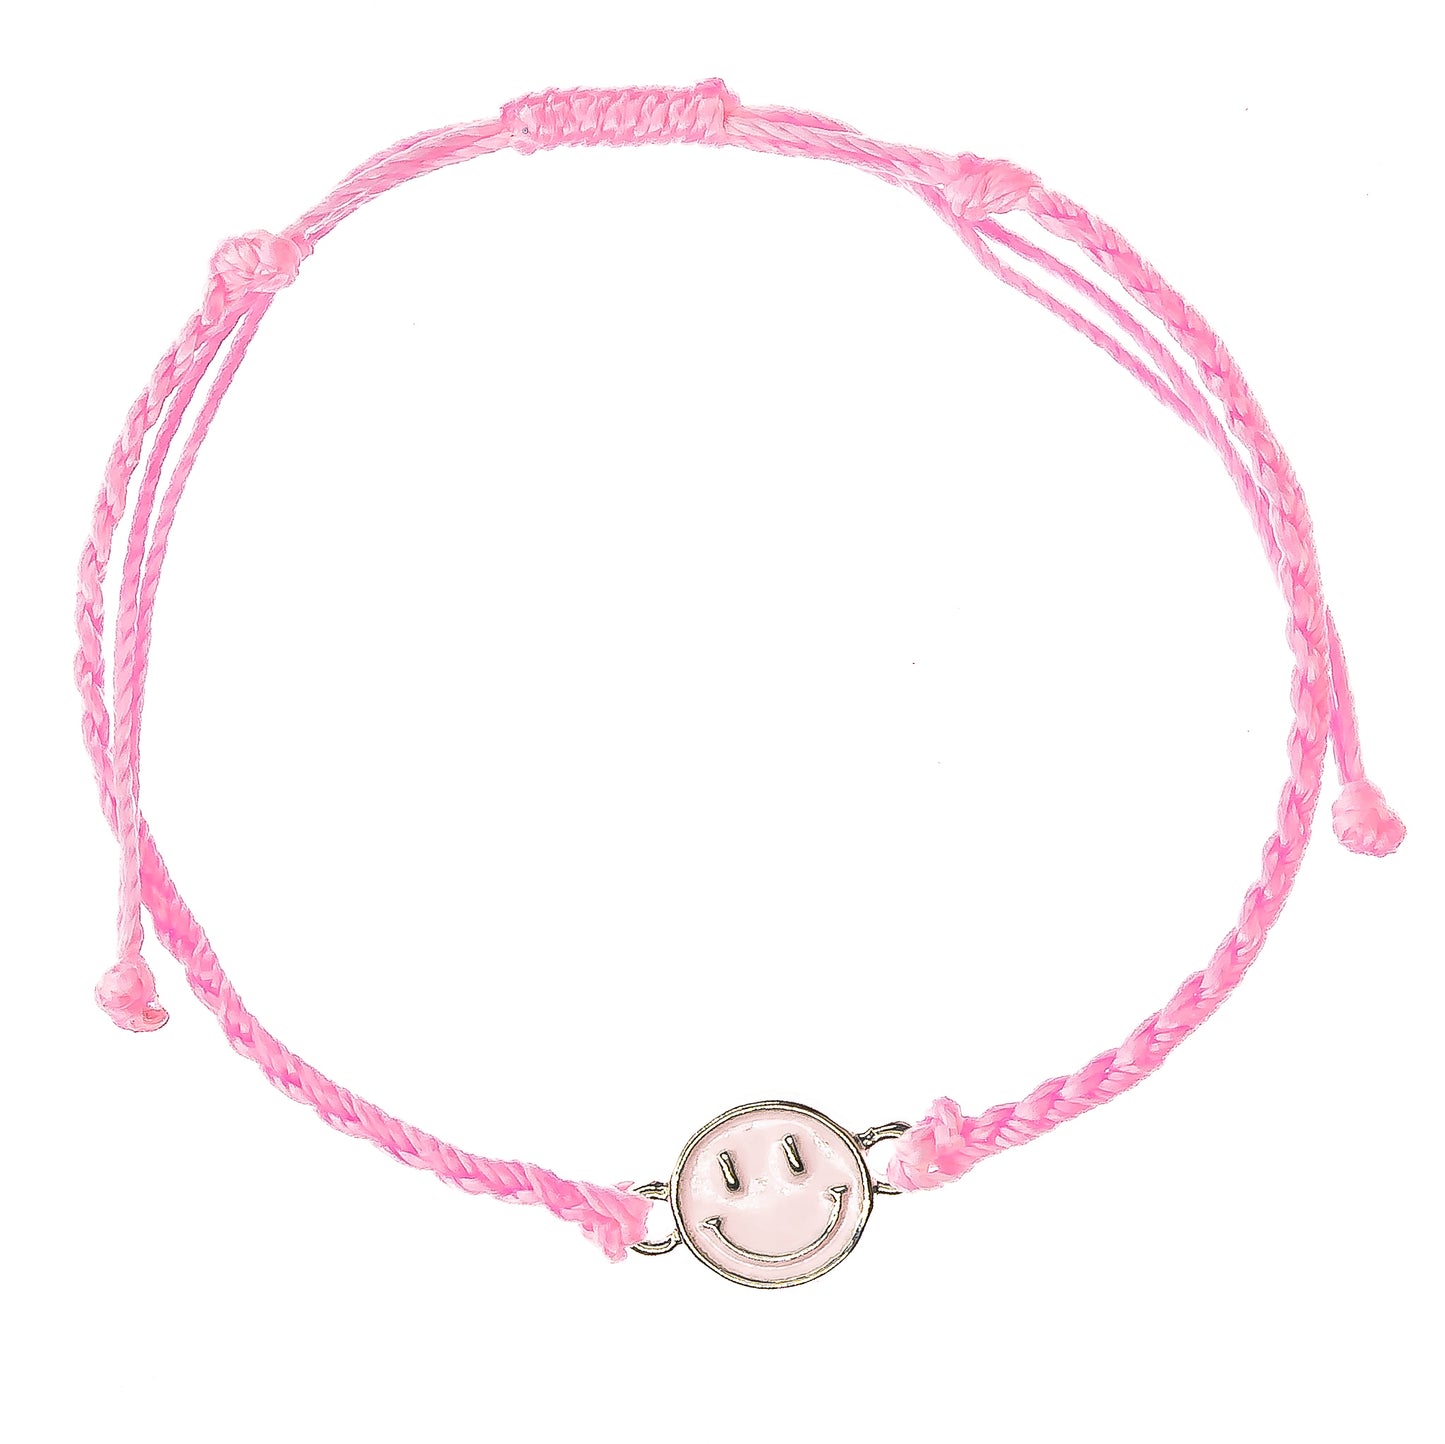 pink smiley face charm string bracelet